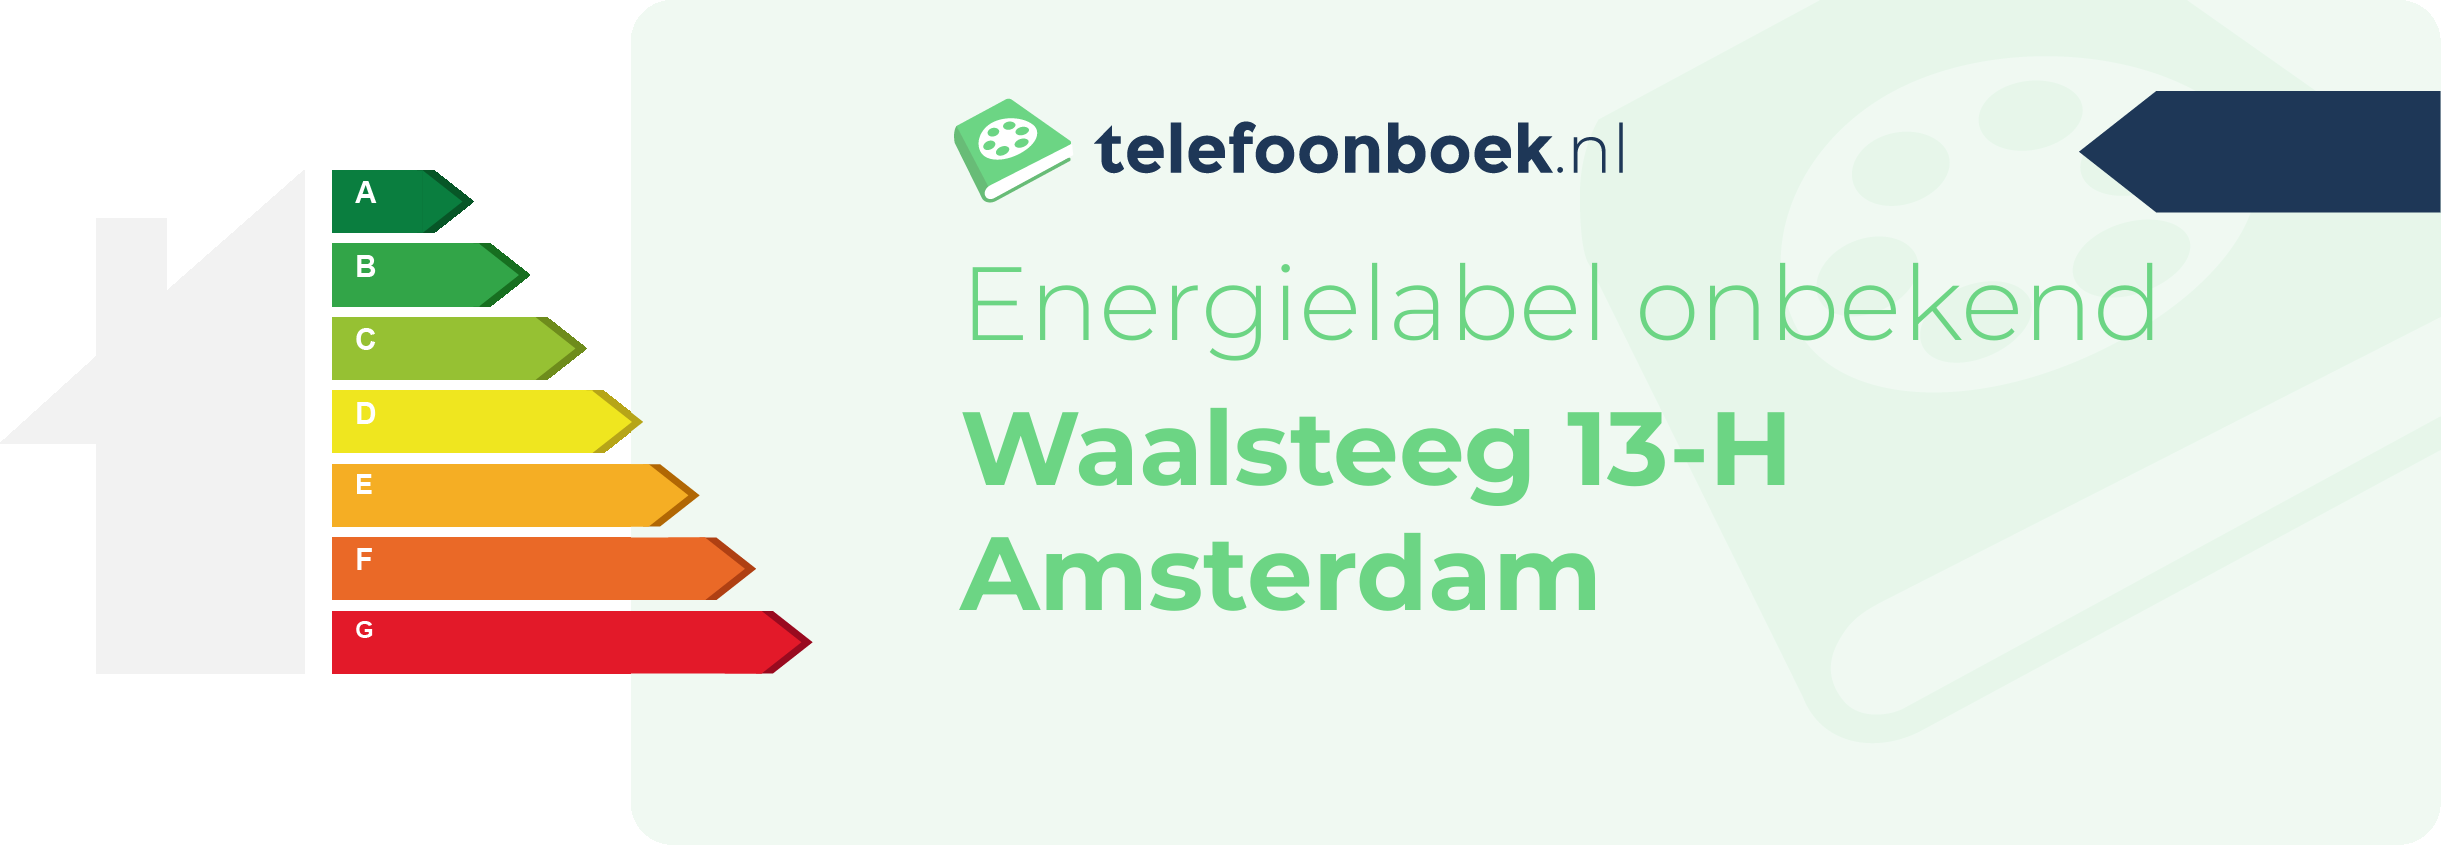 Energielabel Waalsteeg 13-H Amsterdam